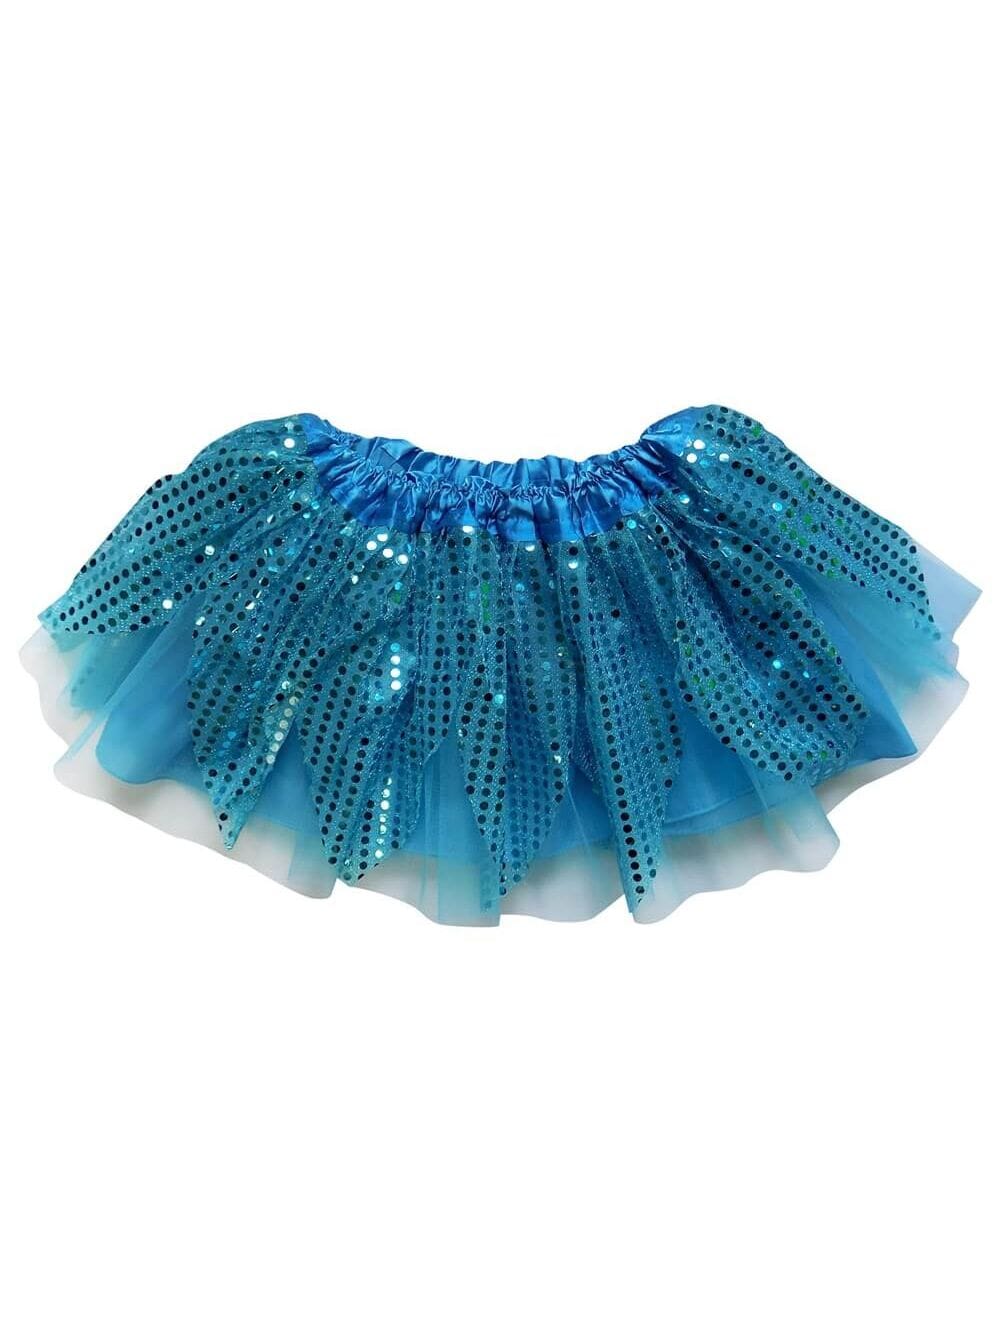 Turquoise Blue Sparkle Running Tutu Skirt Costume for Girls, Women, Plus - Sydney So Sweet